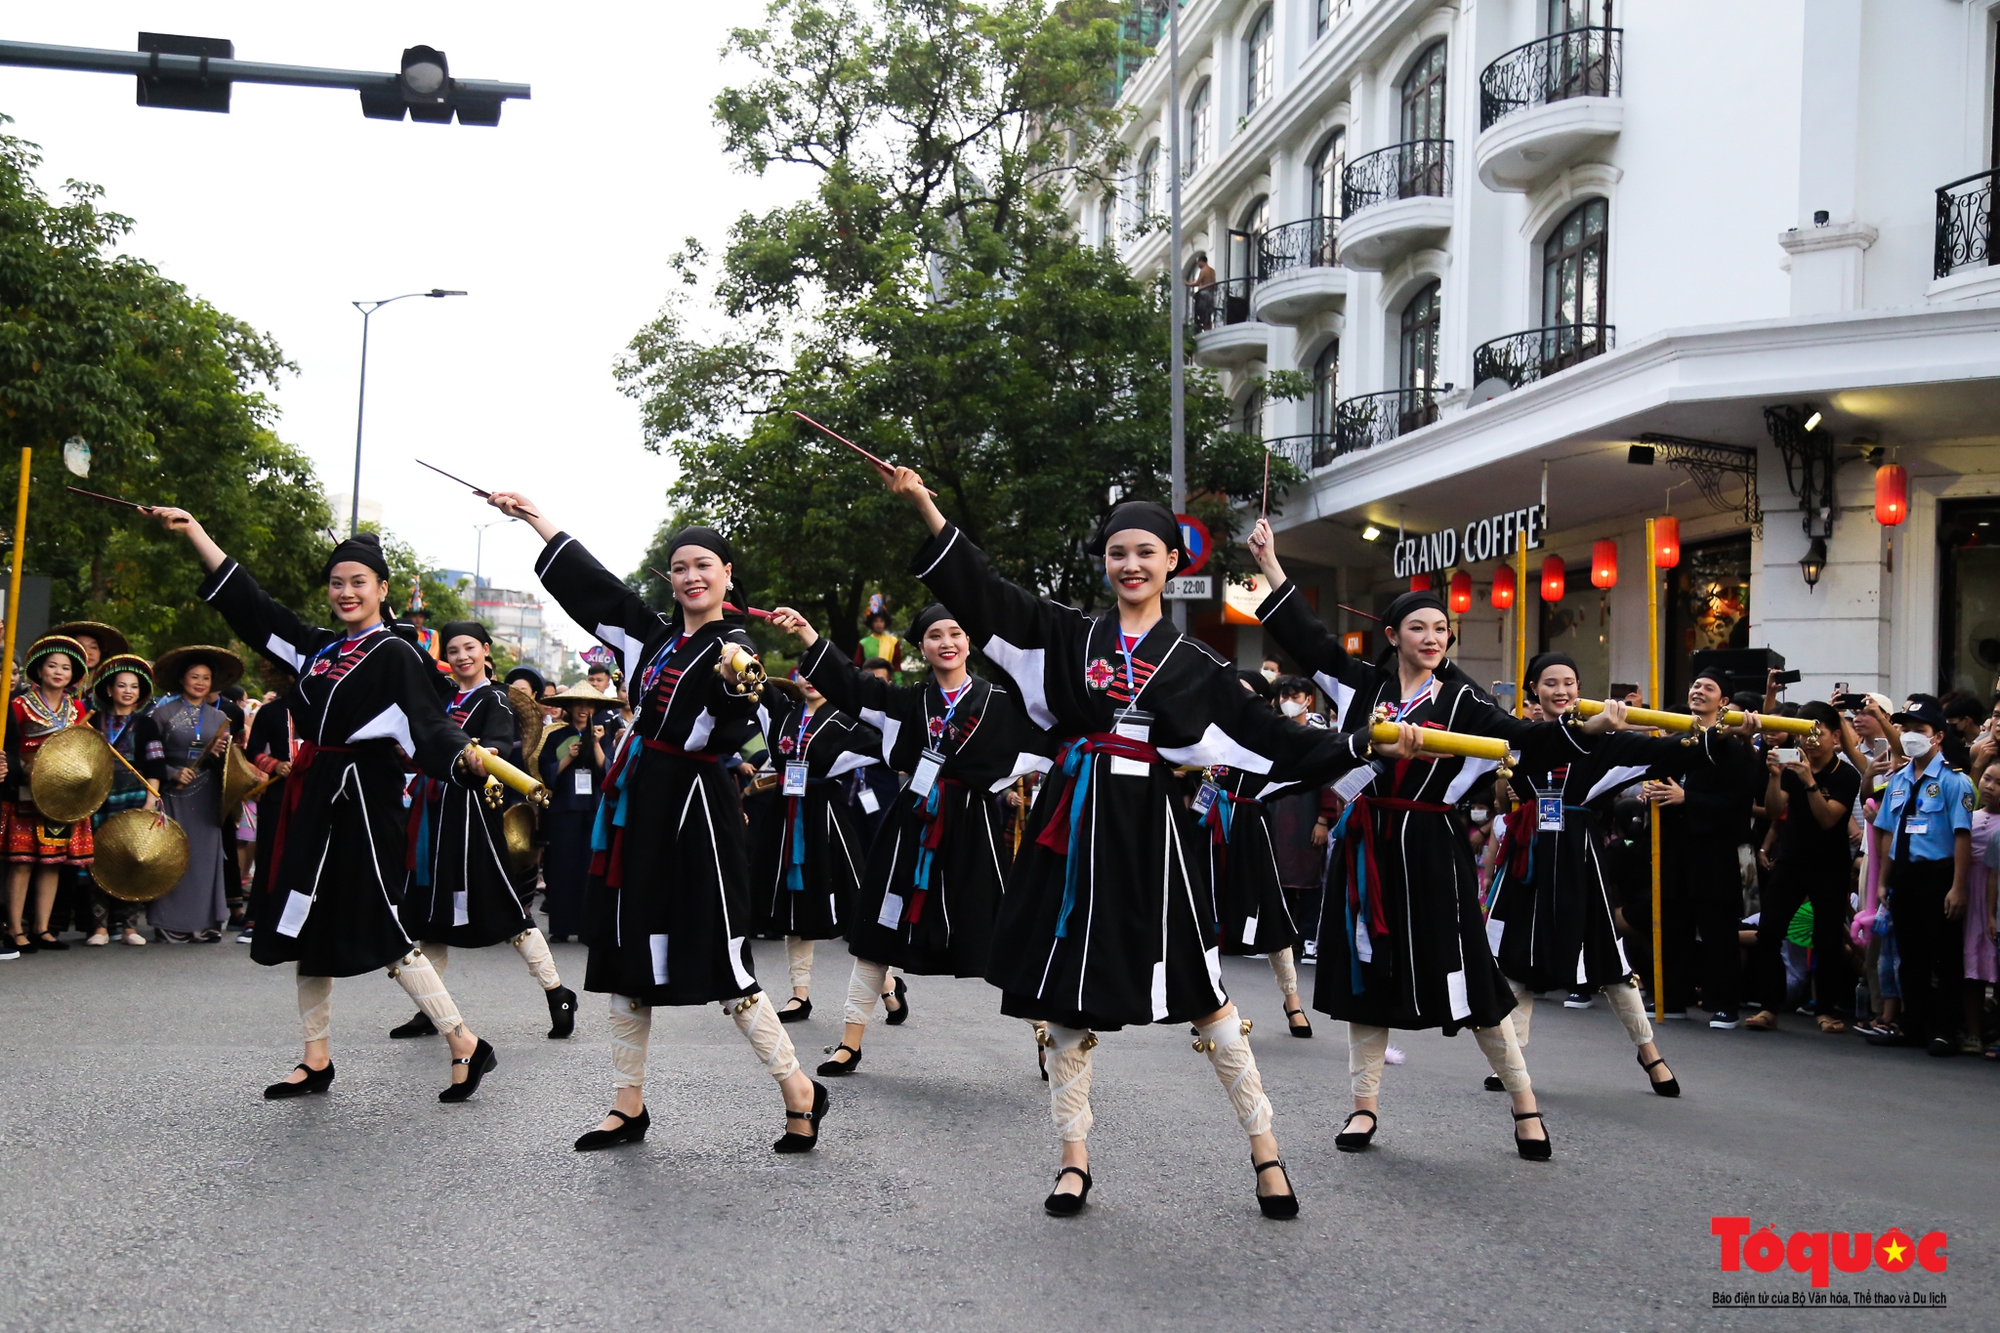 Sôi động lễ hội đường phố “Sắc màu văn hóa” tại Festival Huế - Ảnh 1.